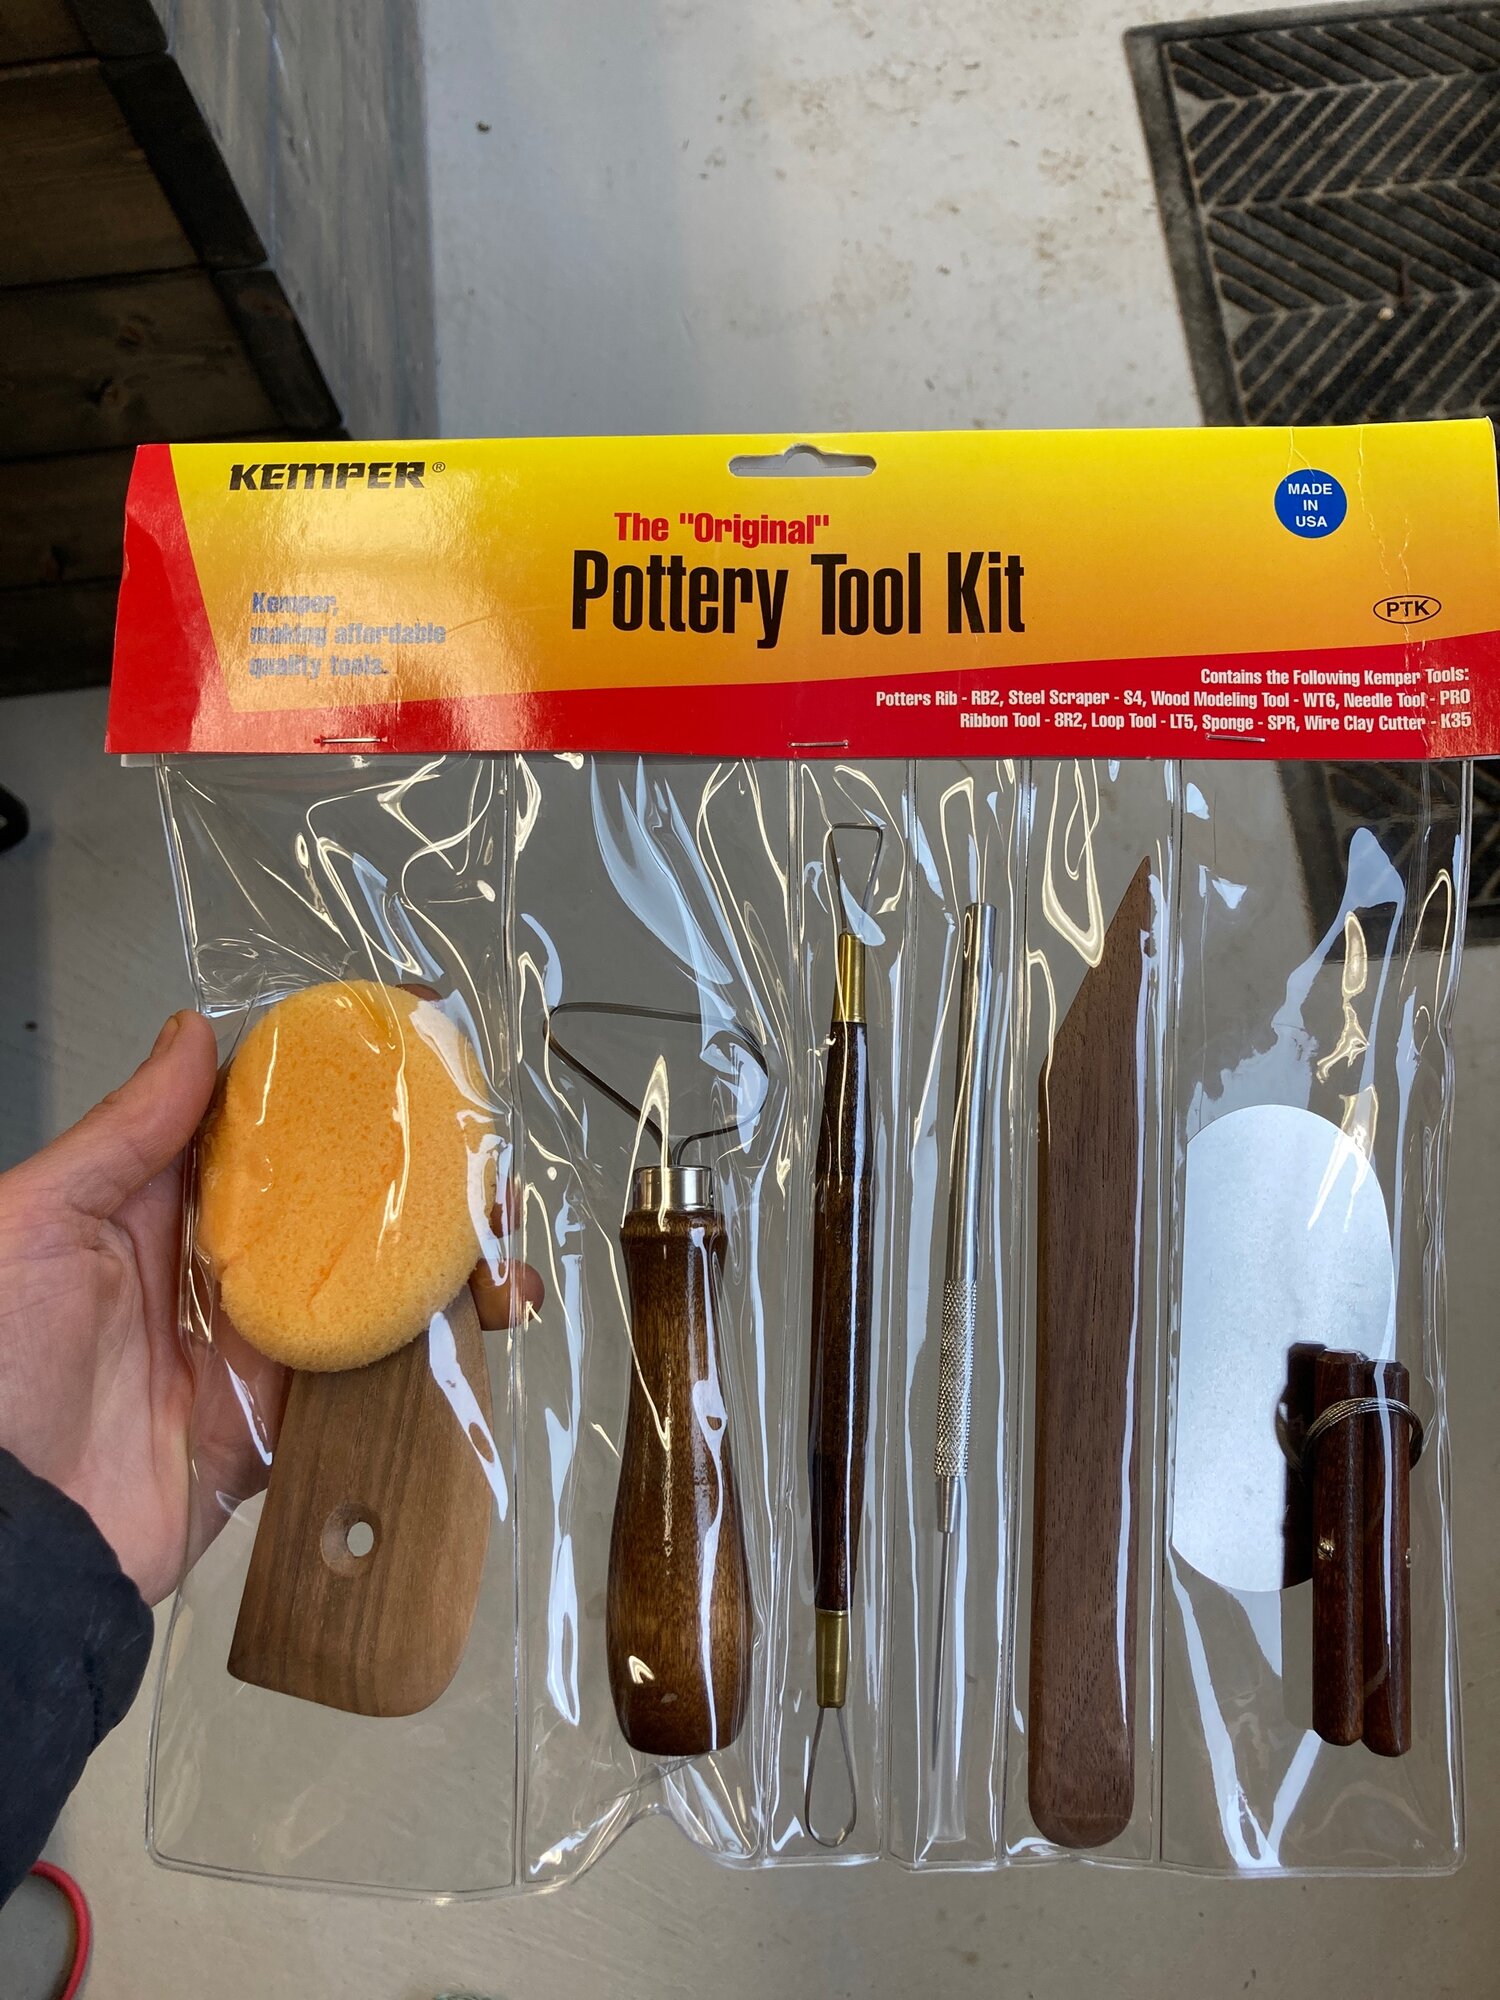 Kemper Pottery Tool Kit